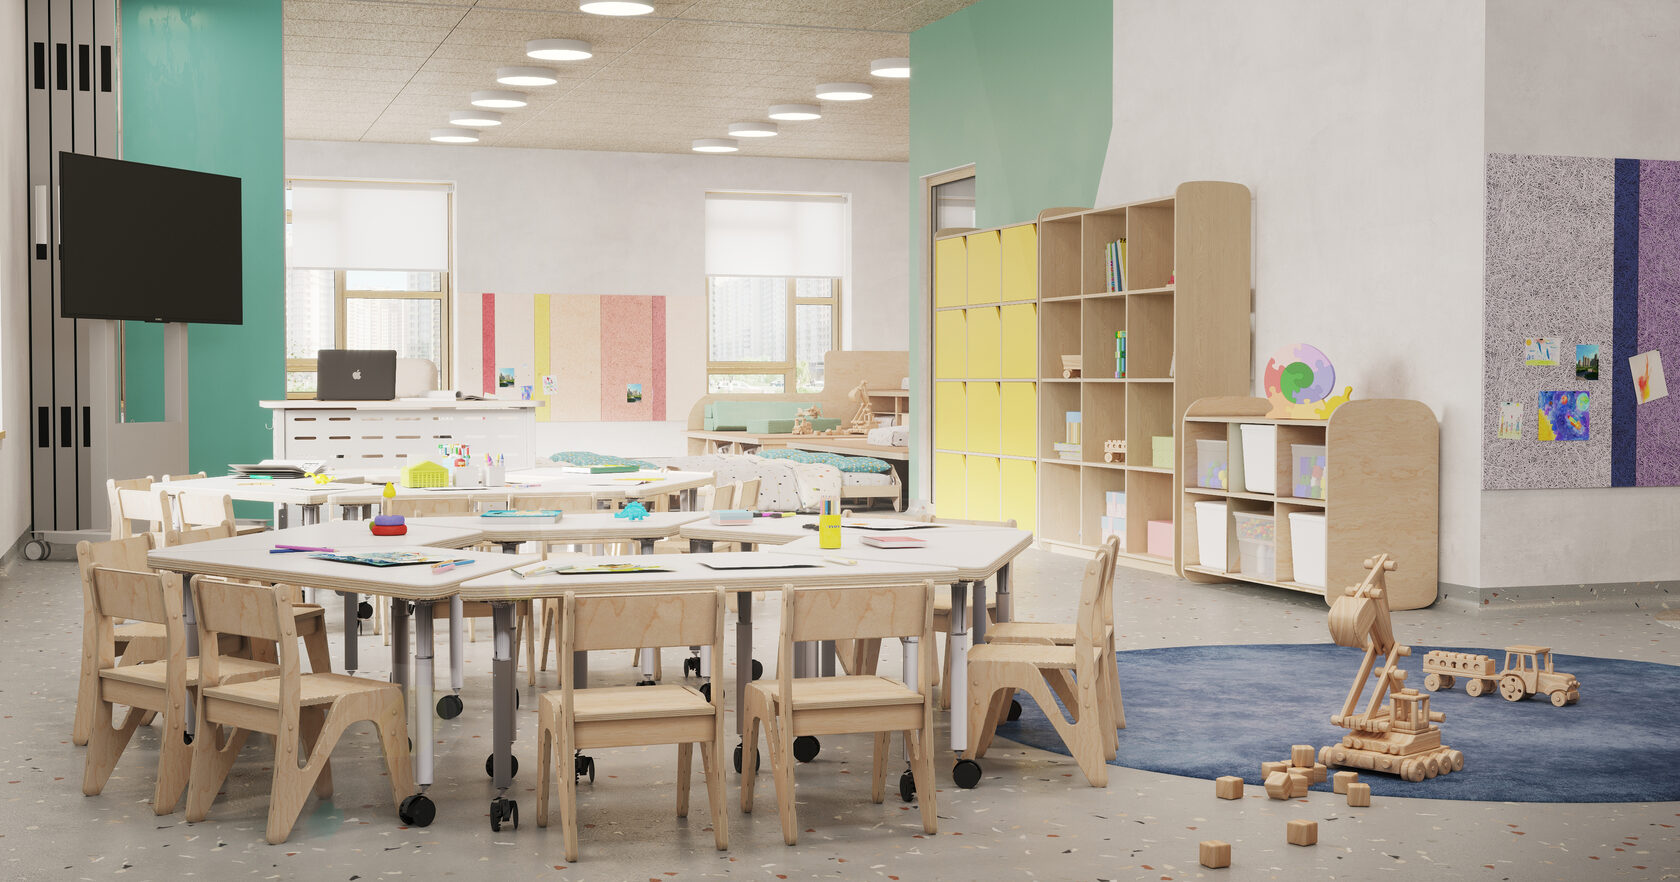 Яркий радужный интерьер в детском саду от дизайнеров студии Palatre & Leclere, Париж, Франция